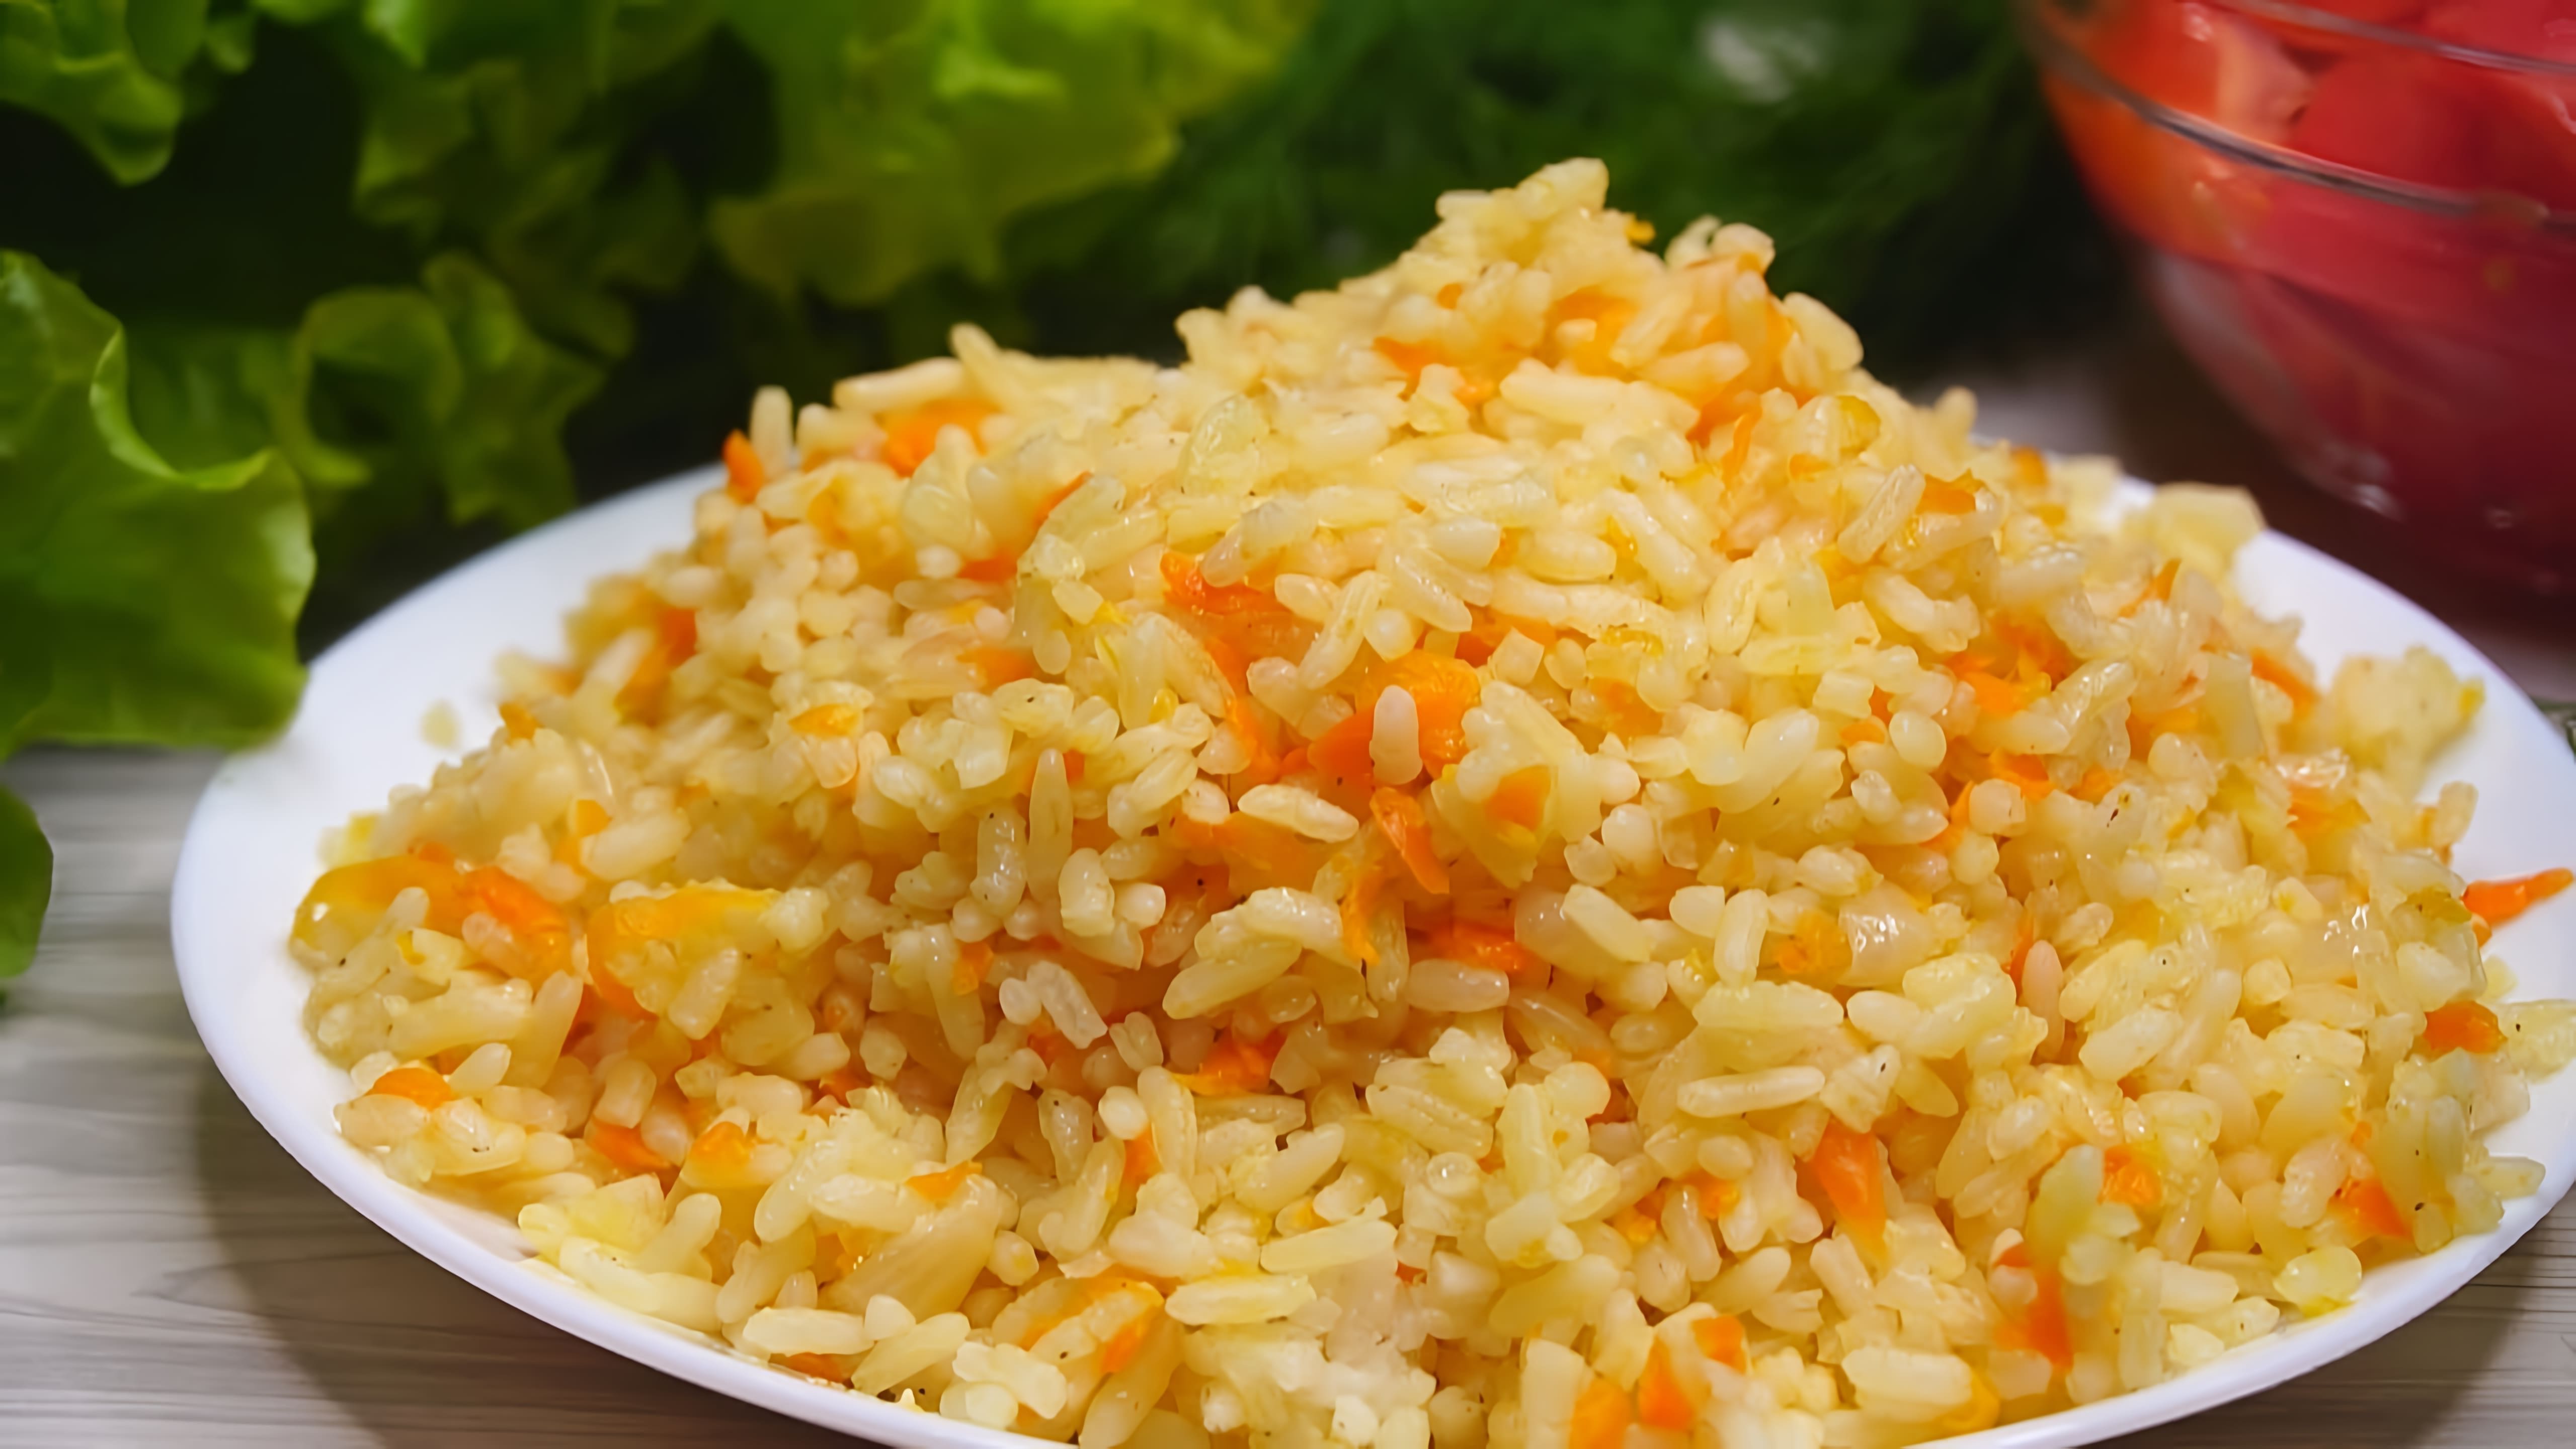 В этом видео демонстрируется простой и быстрый способ приготовления риса с луком и морковью в духовке